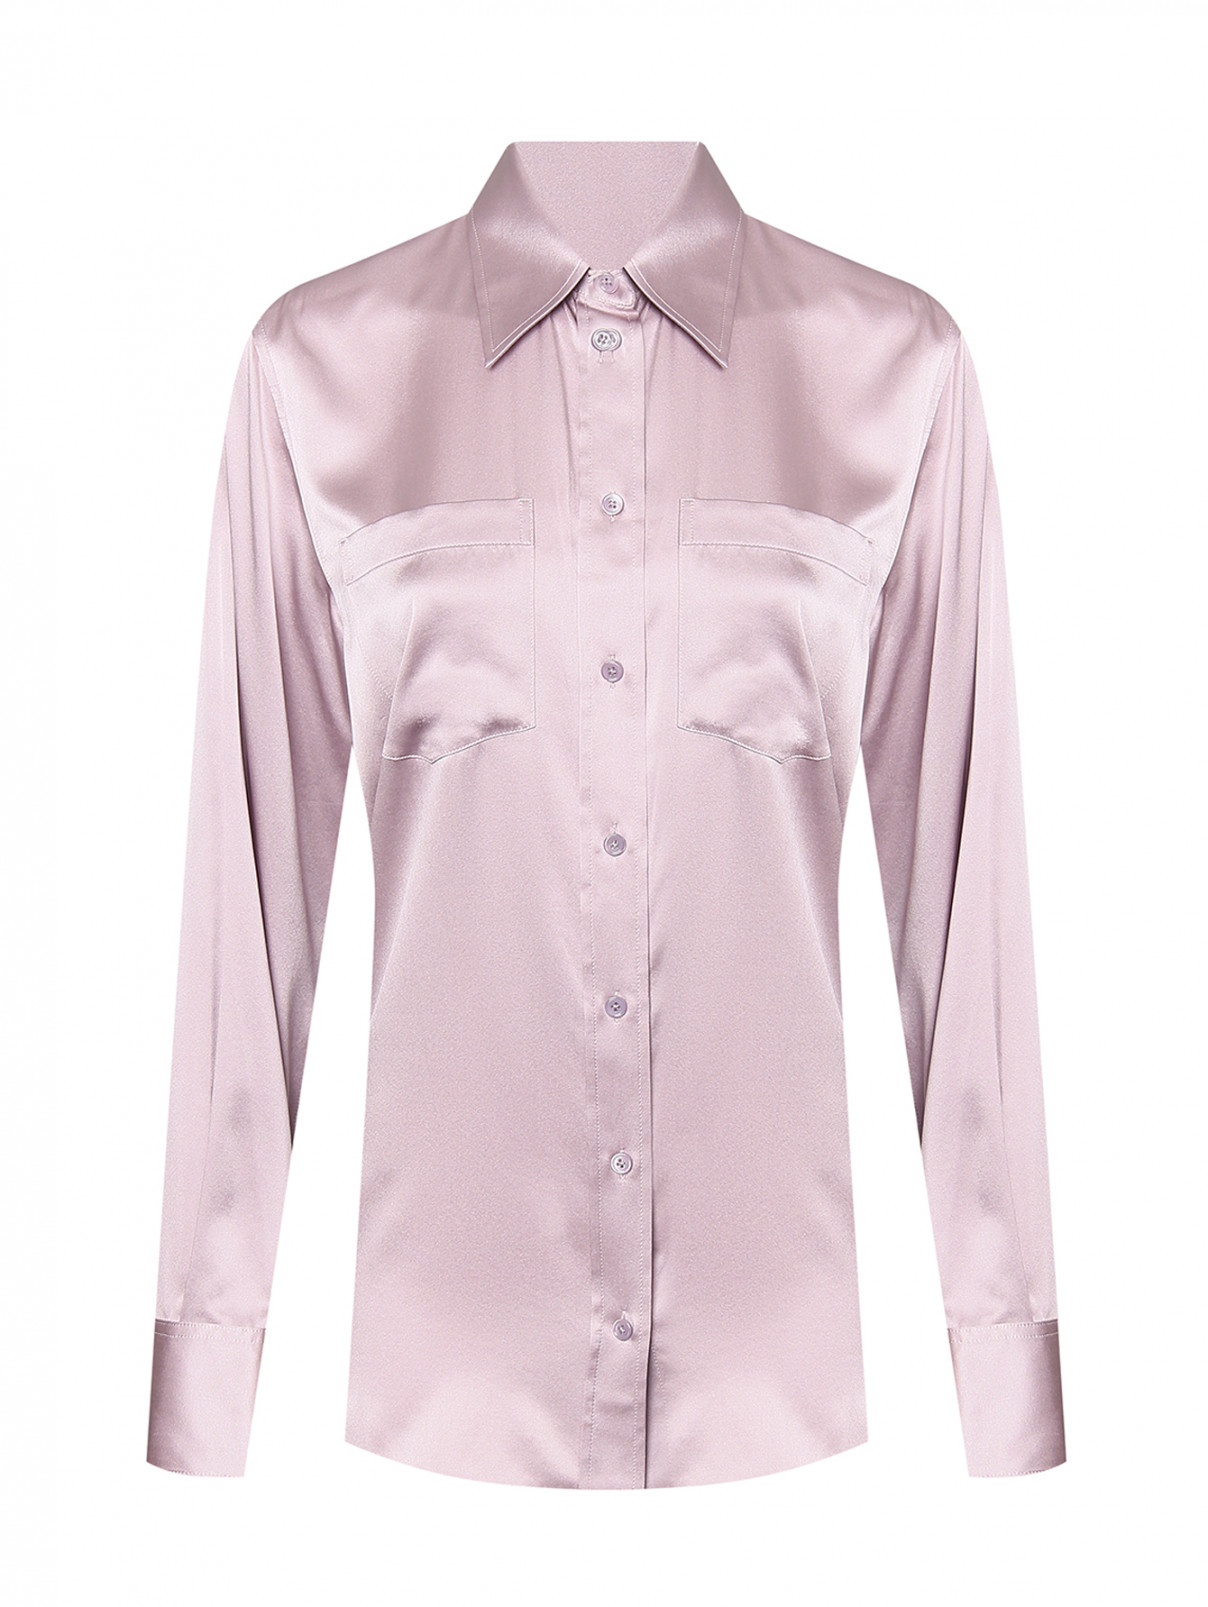 Блузка из шелка и эластана Helmut Lang  –  Общий вид  – Цвет:  Фиолетовый